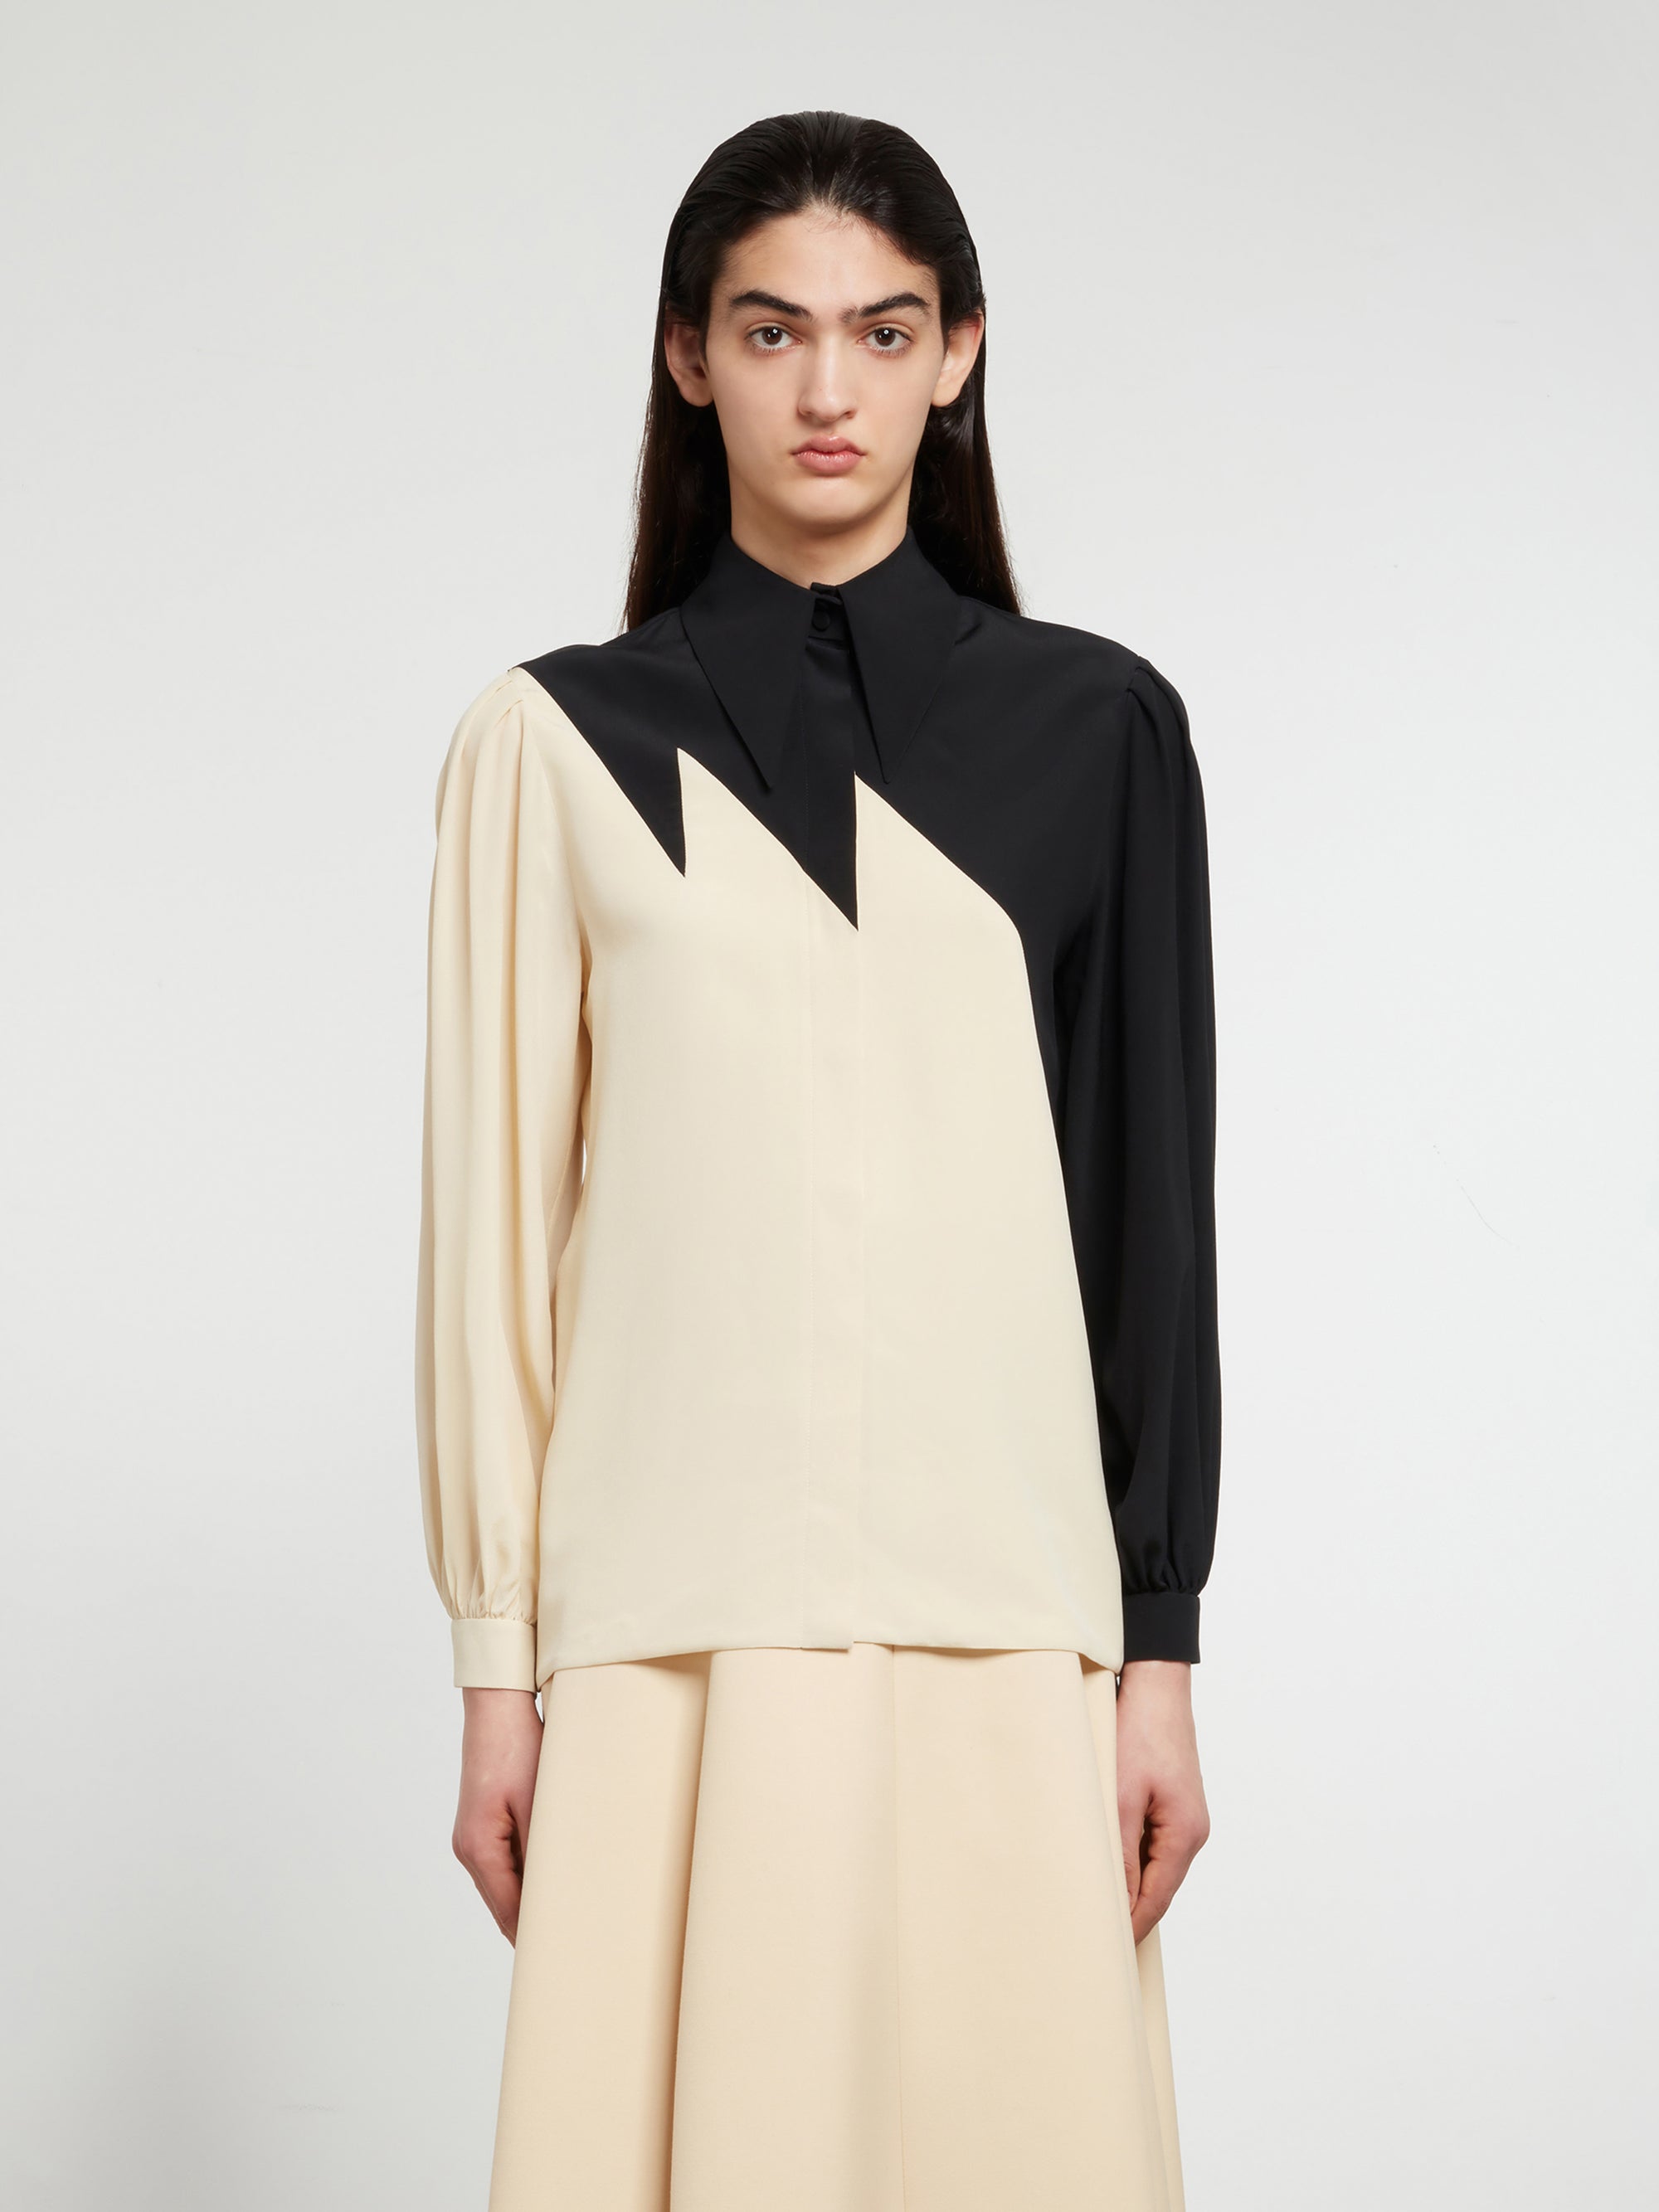 Gucci - Women’s DSM Exclusive Silk Crepe de Chine Shirt - (Black/Ivory) view 1